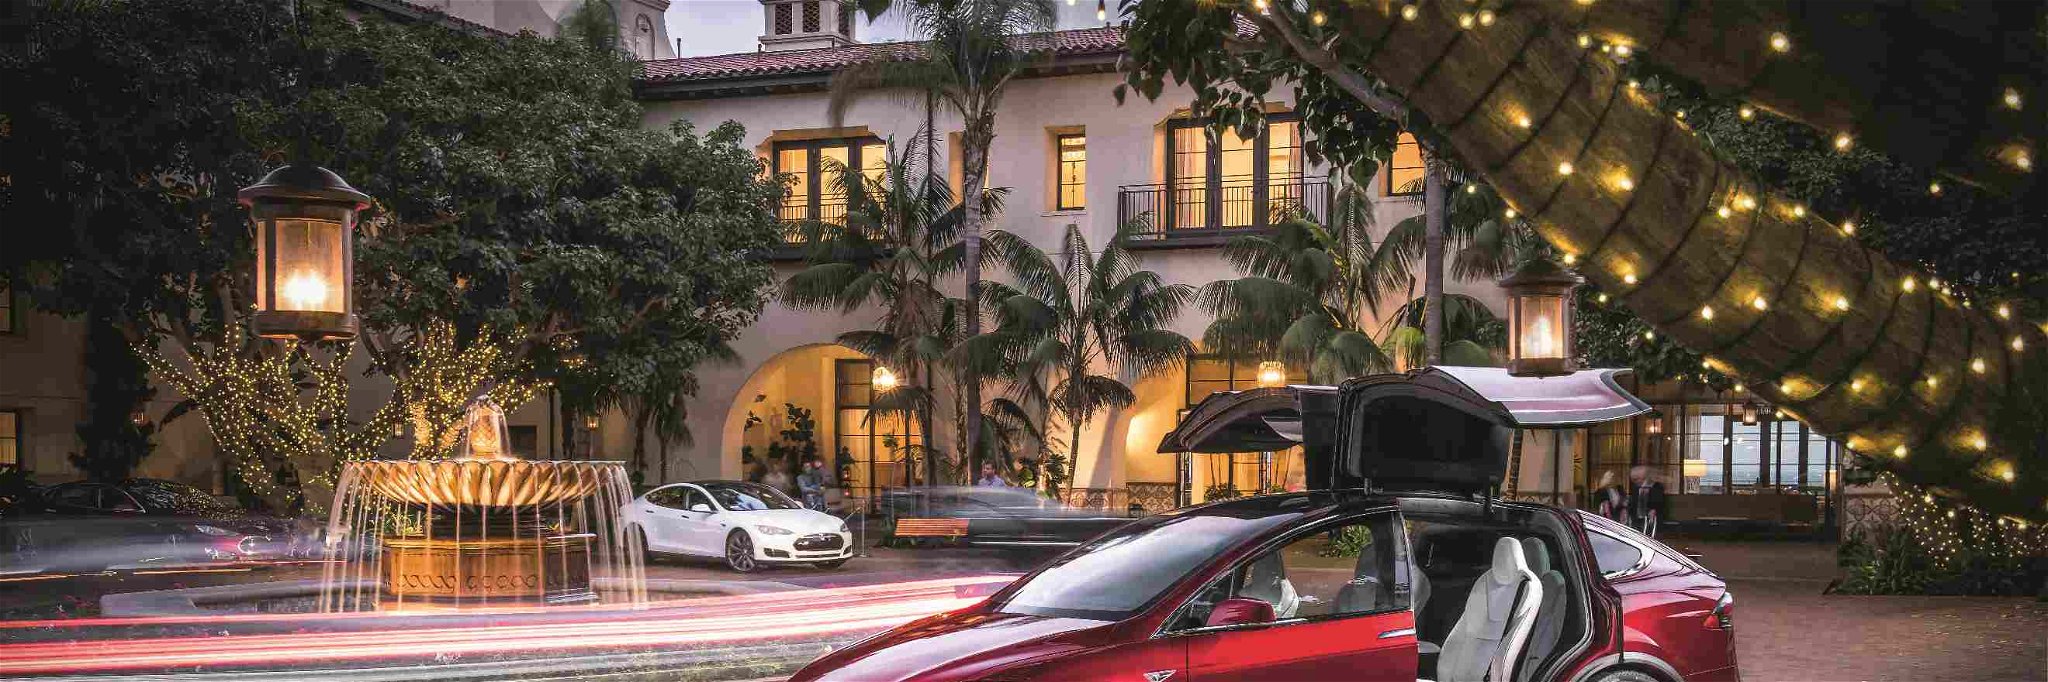 Tesla Model X: Der Weg an die Steckdose von Hotels in Deutschland, Österreich und der Schweiz wird immer häufiger. Vor allem Tesla schaffte es, sich im Hotelfuhrpark einen Namen zu machen.